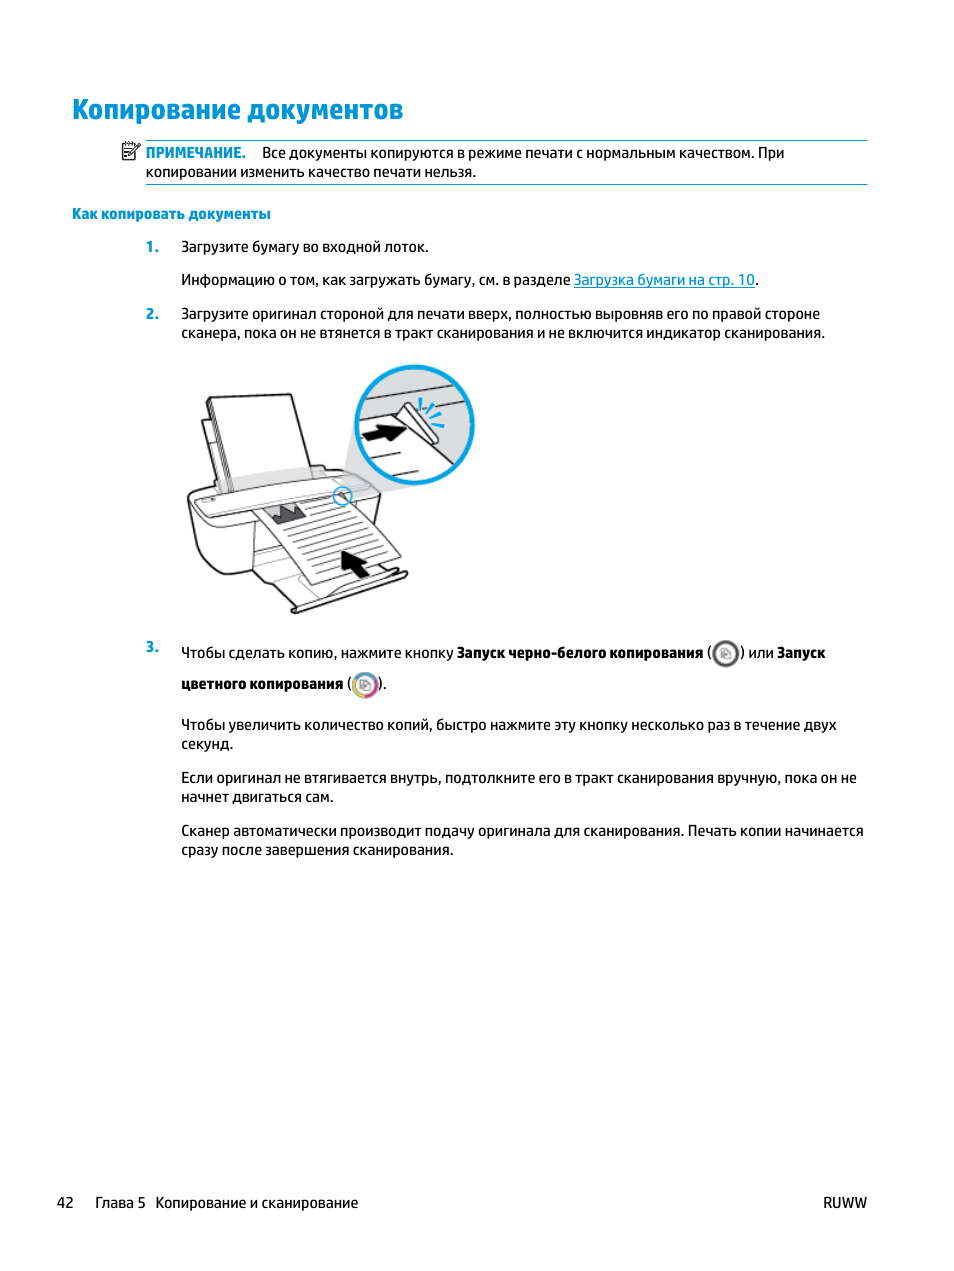 Копирование документов | Инструкция по эксплуатации HP DeskJet 3700 | Страница 46 / 122